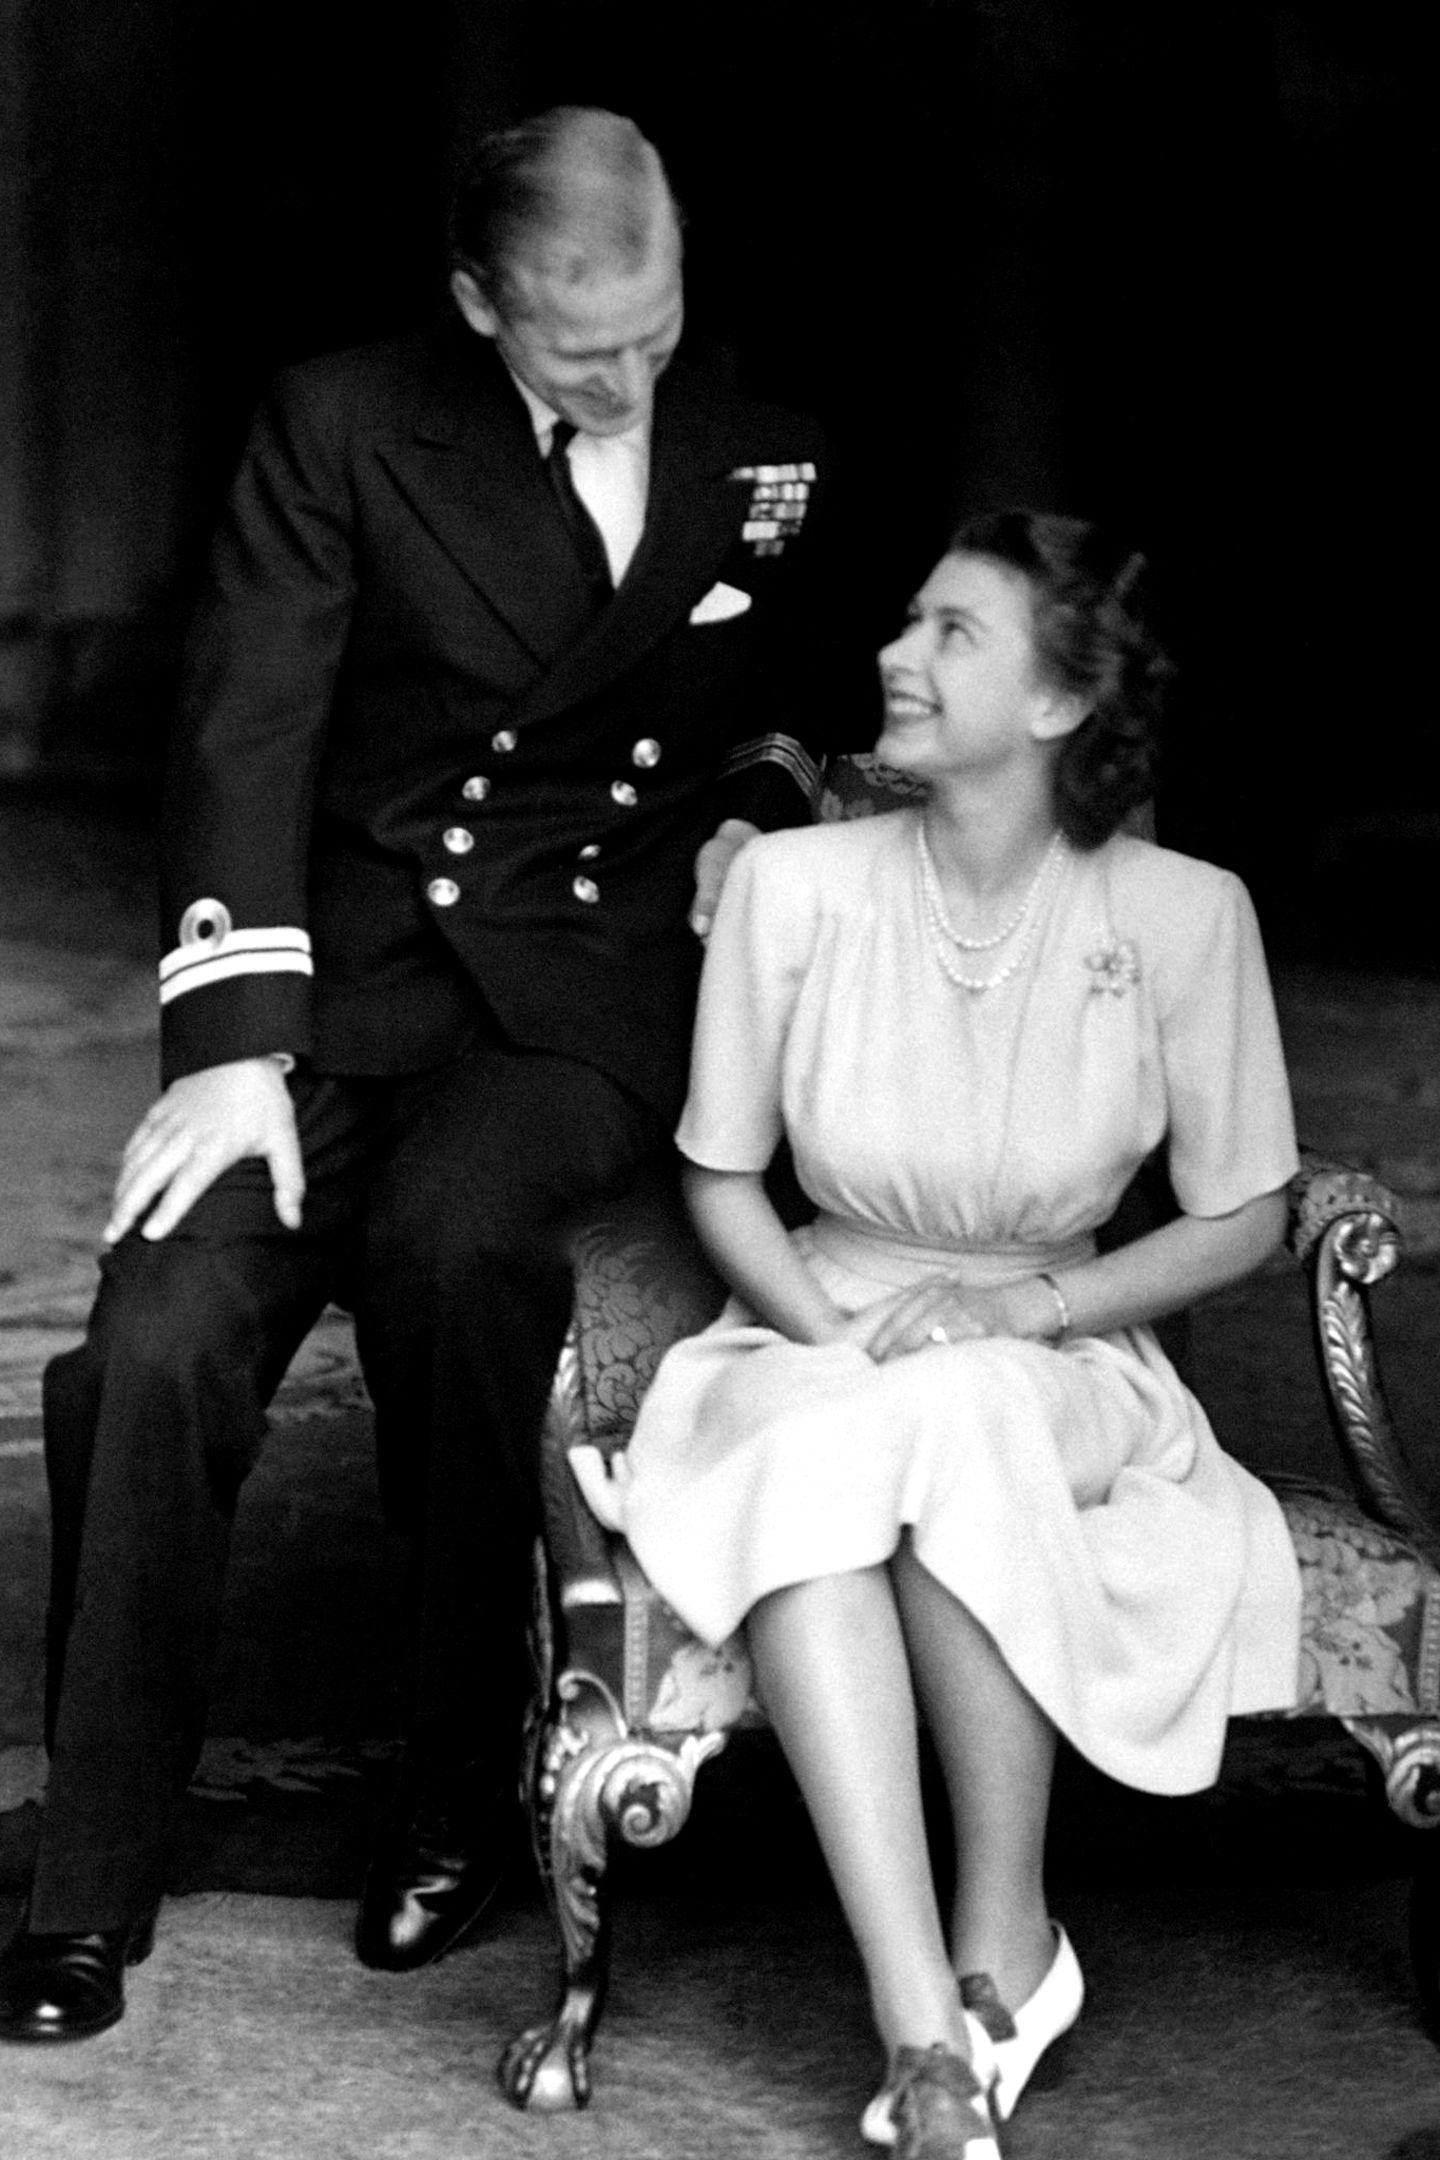 09. Juli 2018   Wie die Zeit vergeht: Am 9. Juli 1947 beschließen Queen Elizabeth II und Philip Mountbatten offiziell zu heiraten. Einen Tag darauf, am 10. Juli 1947 werden die Verlobungsfotos veröffentlicht. 